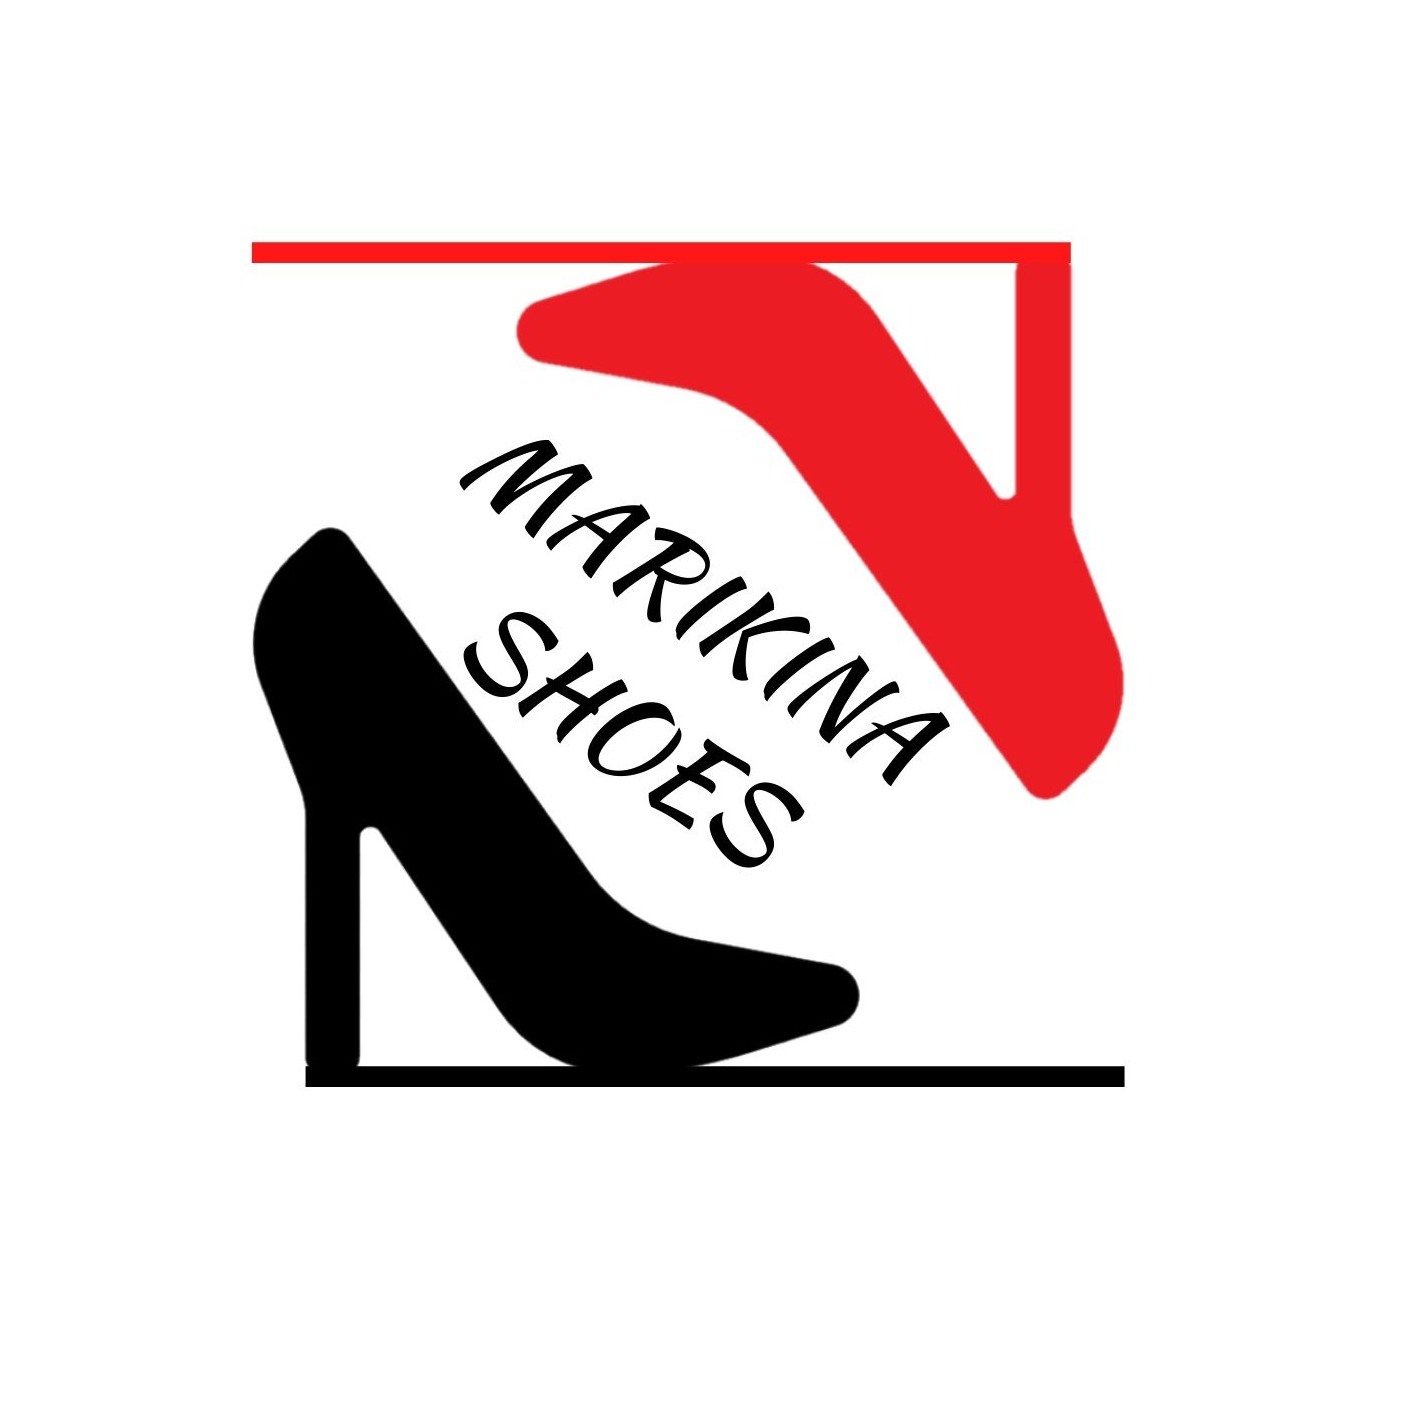 Shop online with MarikinaShoe now! Visit MarikinaShoe on Lazada.